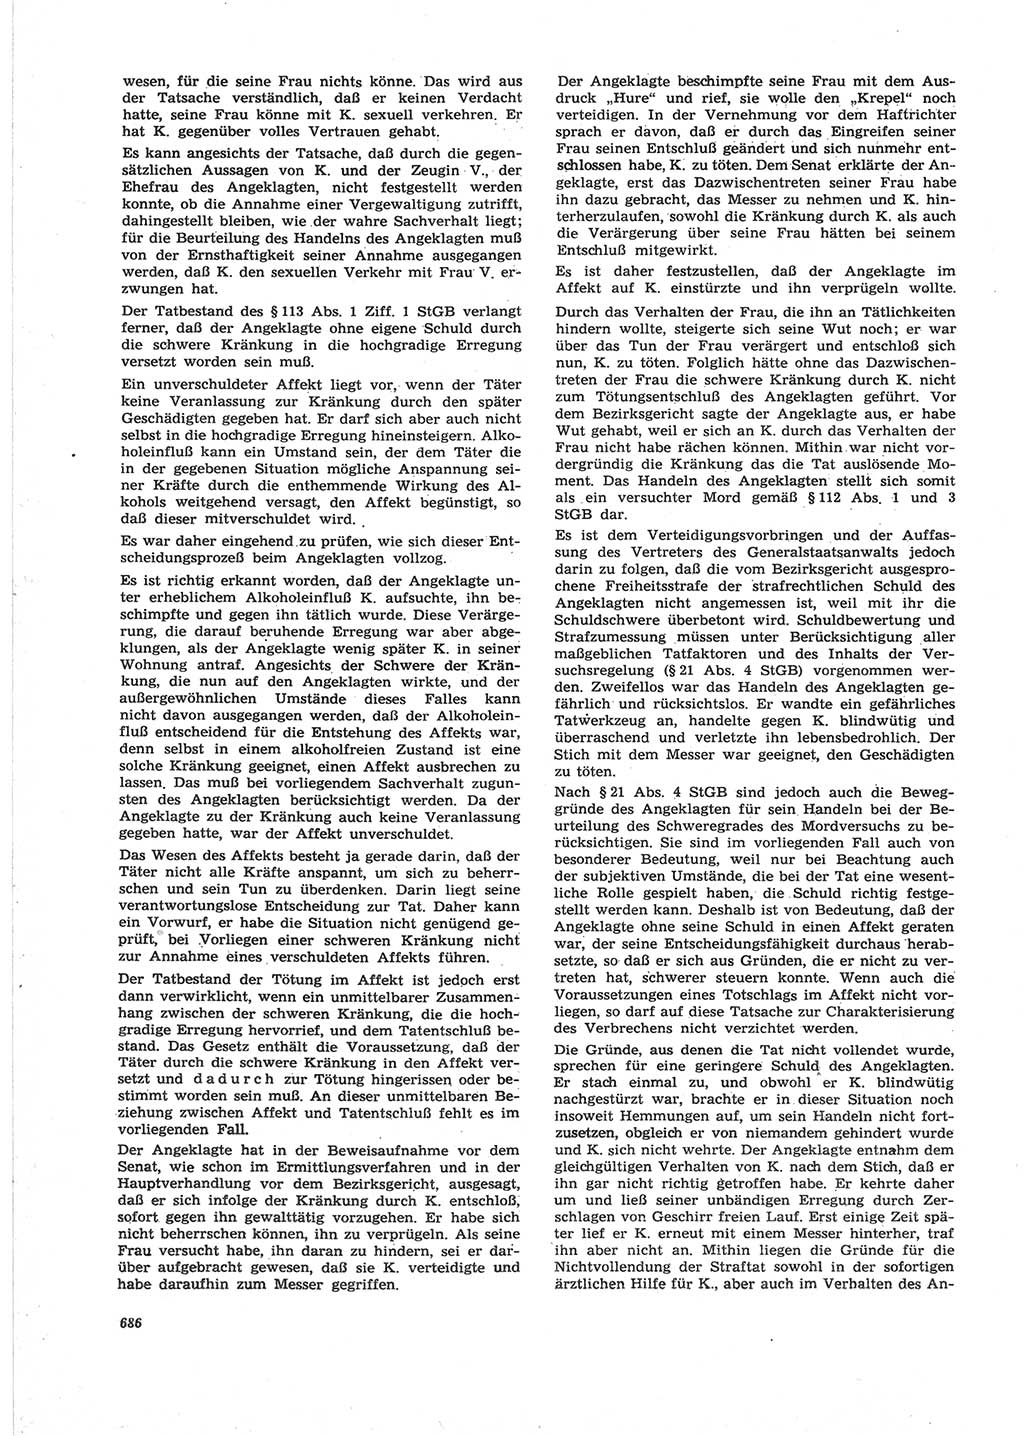 Neue Justiz (NJ), Zeitschrift für Recht und Rechtswissenschaft [Deutsche Demokratische Republik (DDR)], 25. Jahrgang 1971, Seite 686 (NJ DDR 1971, S. 686)